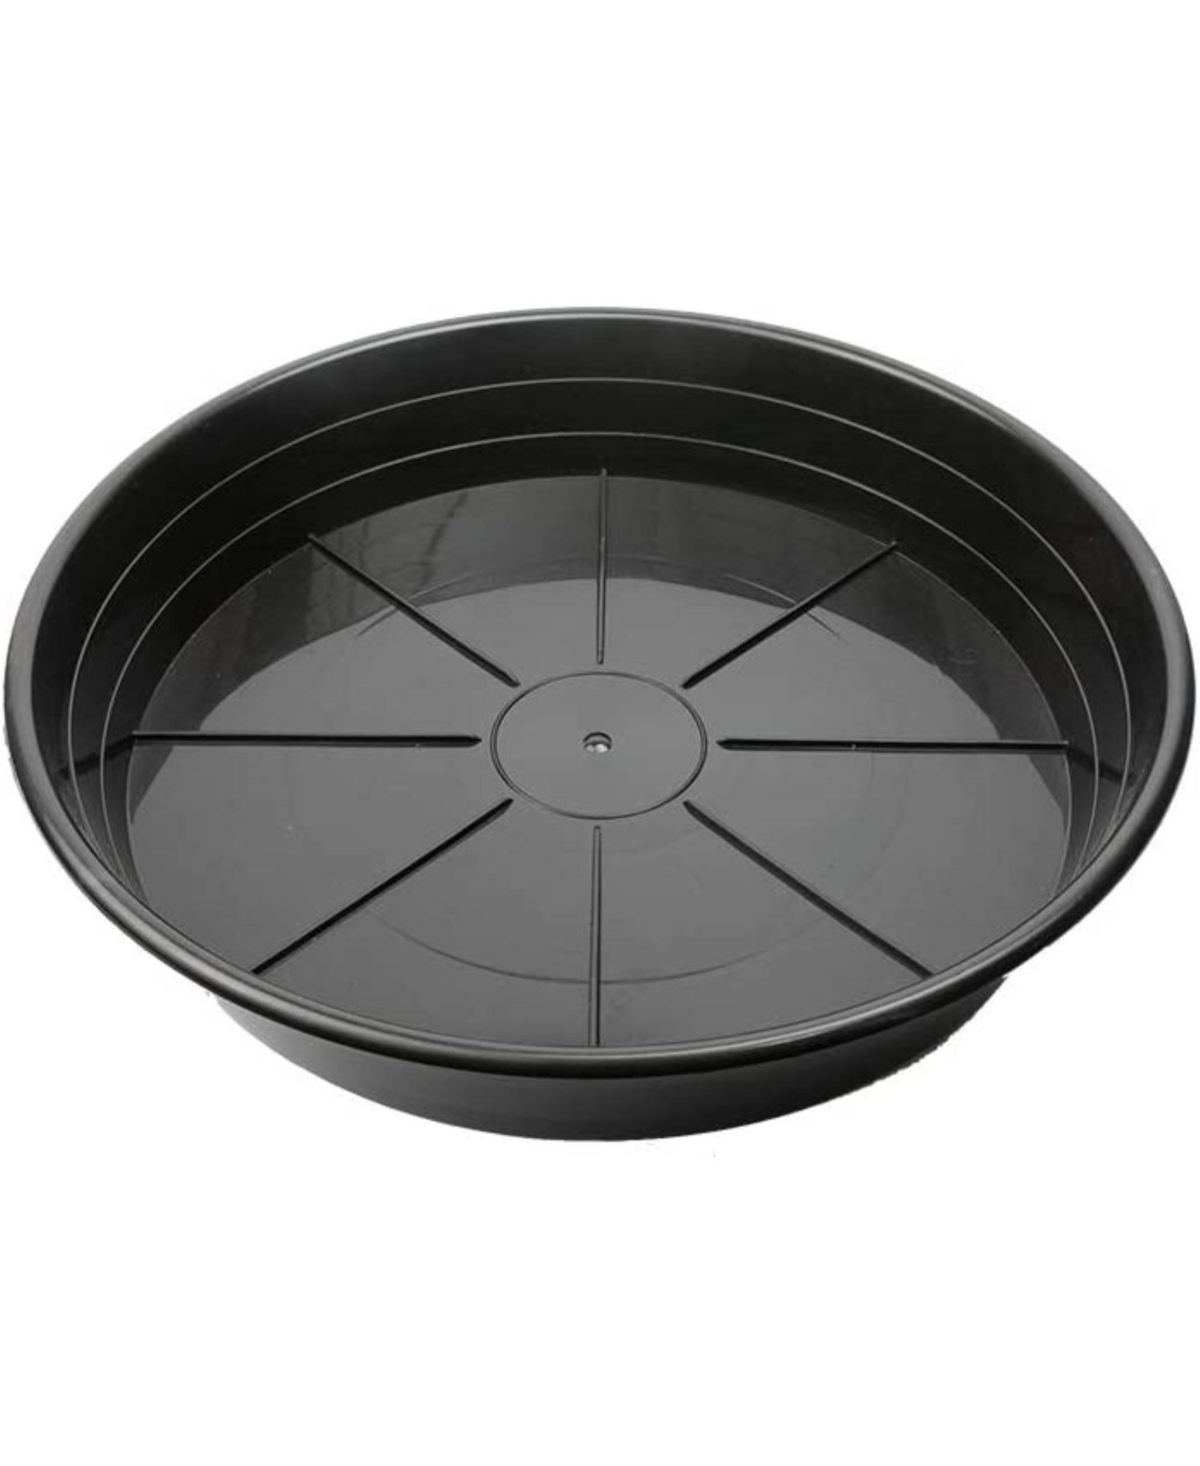 Uv-Resistant Premium Plastic Plant Saucer, 14in - Black